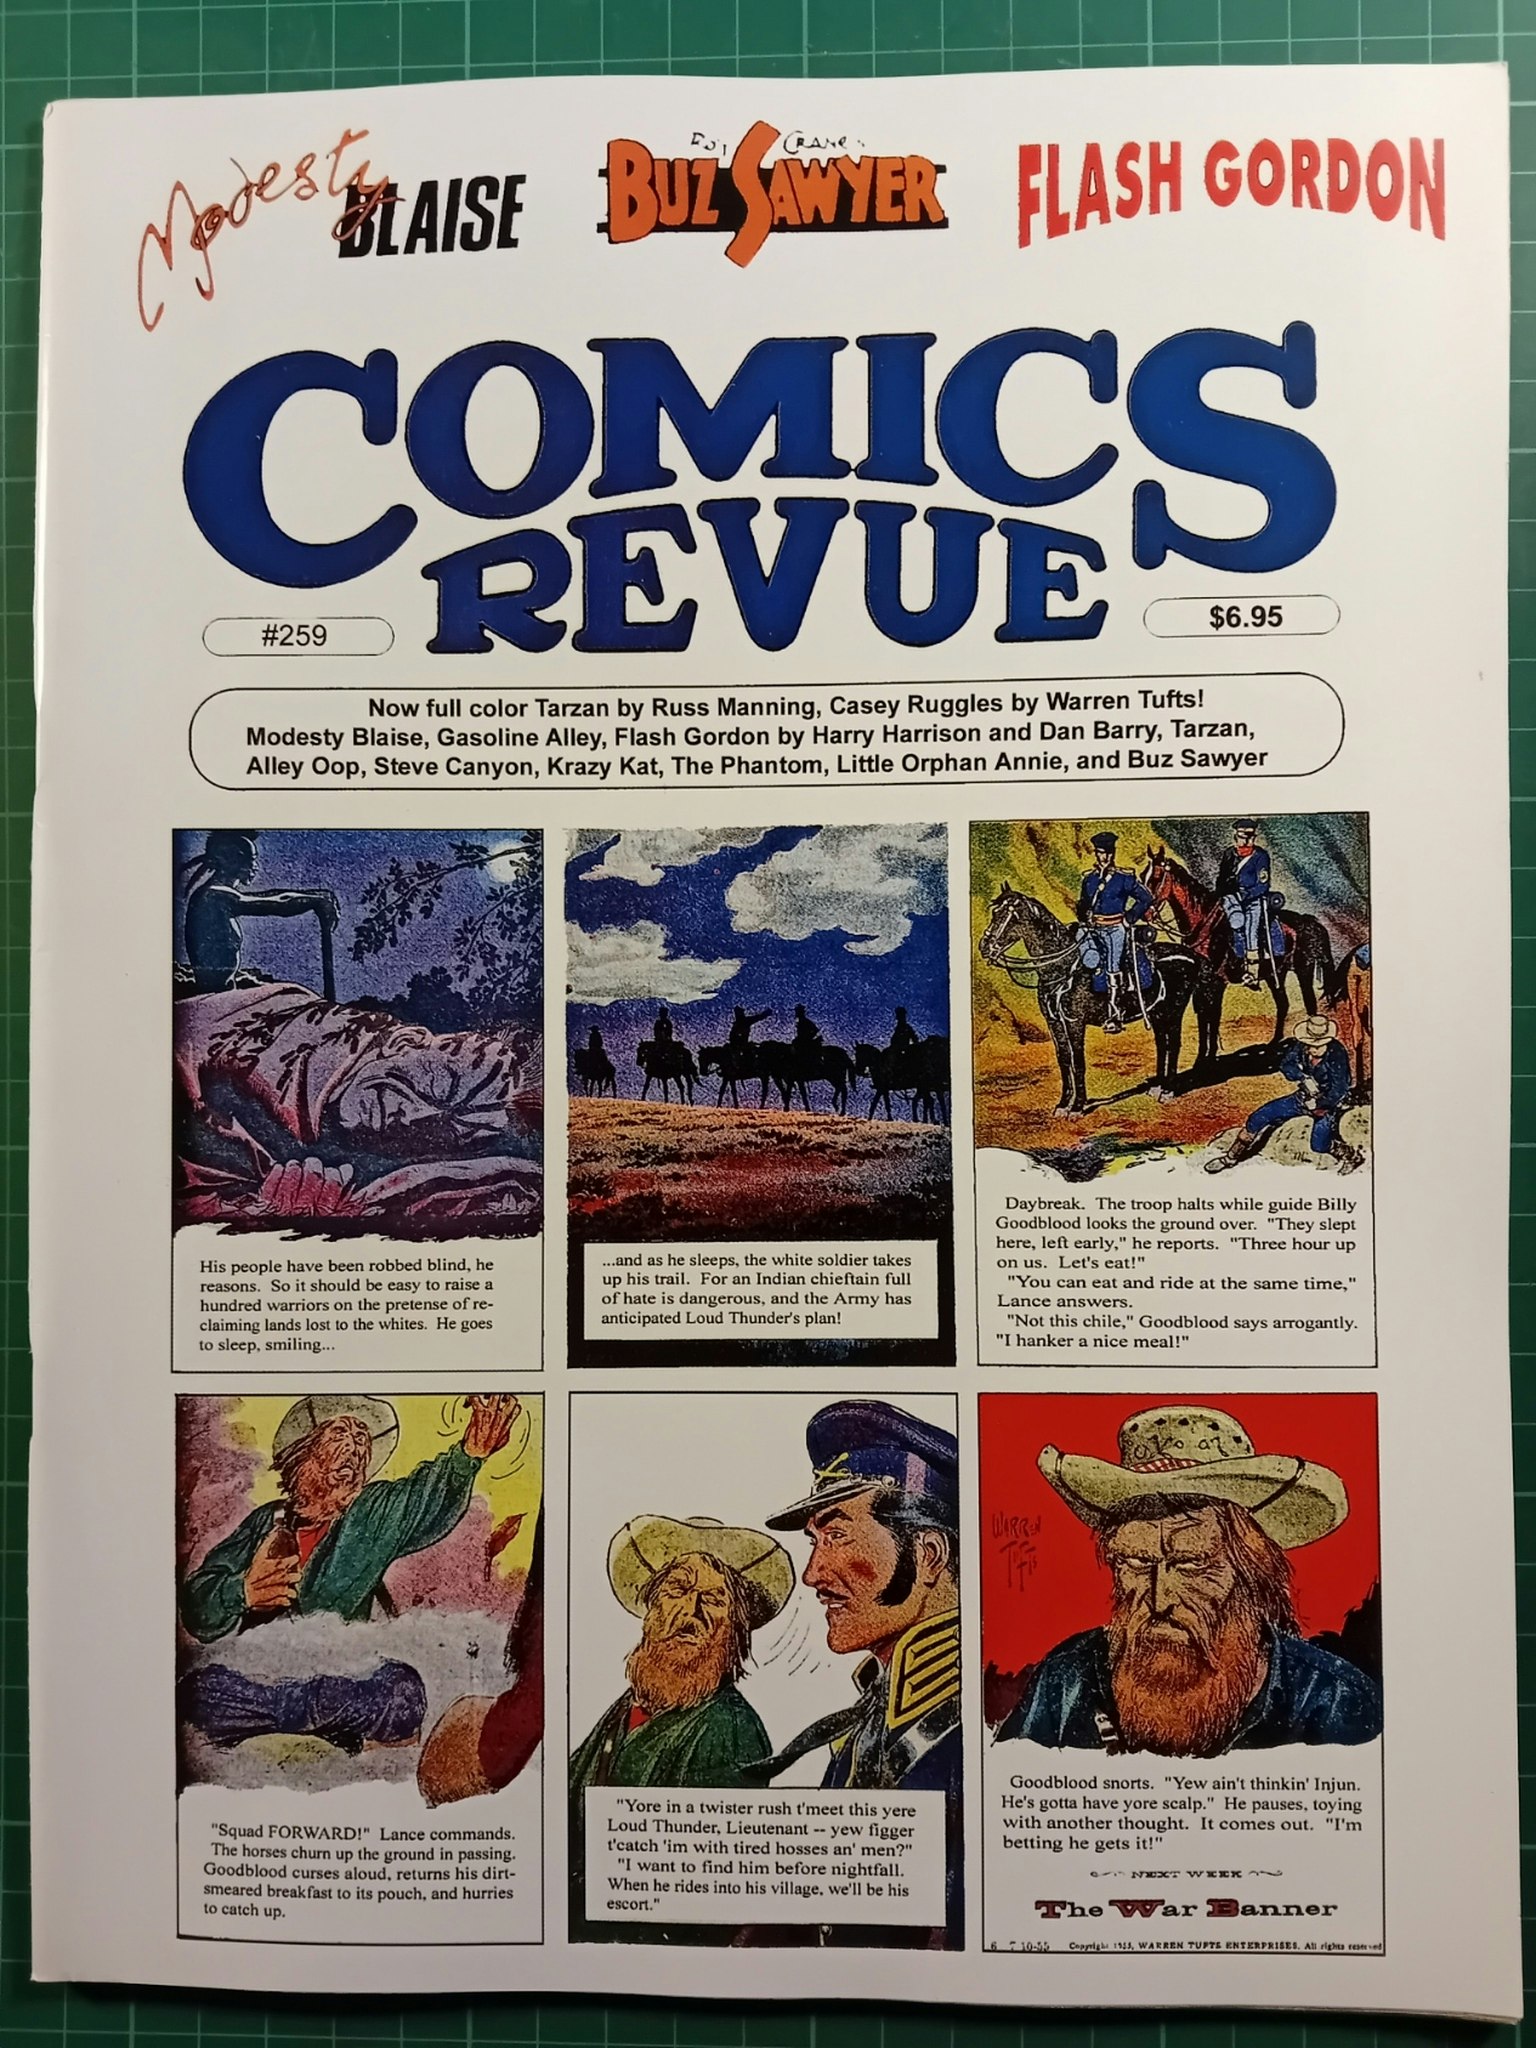 Comics revue #259